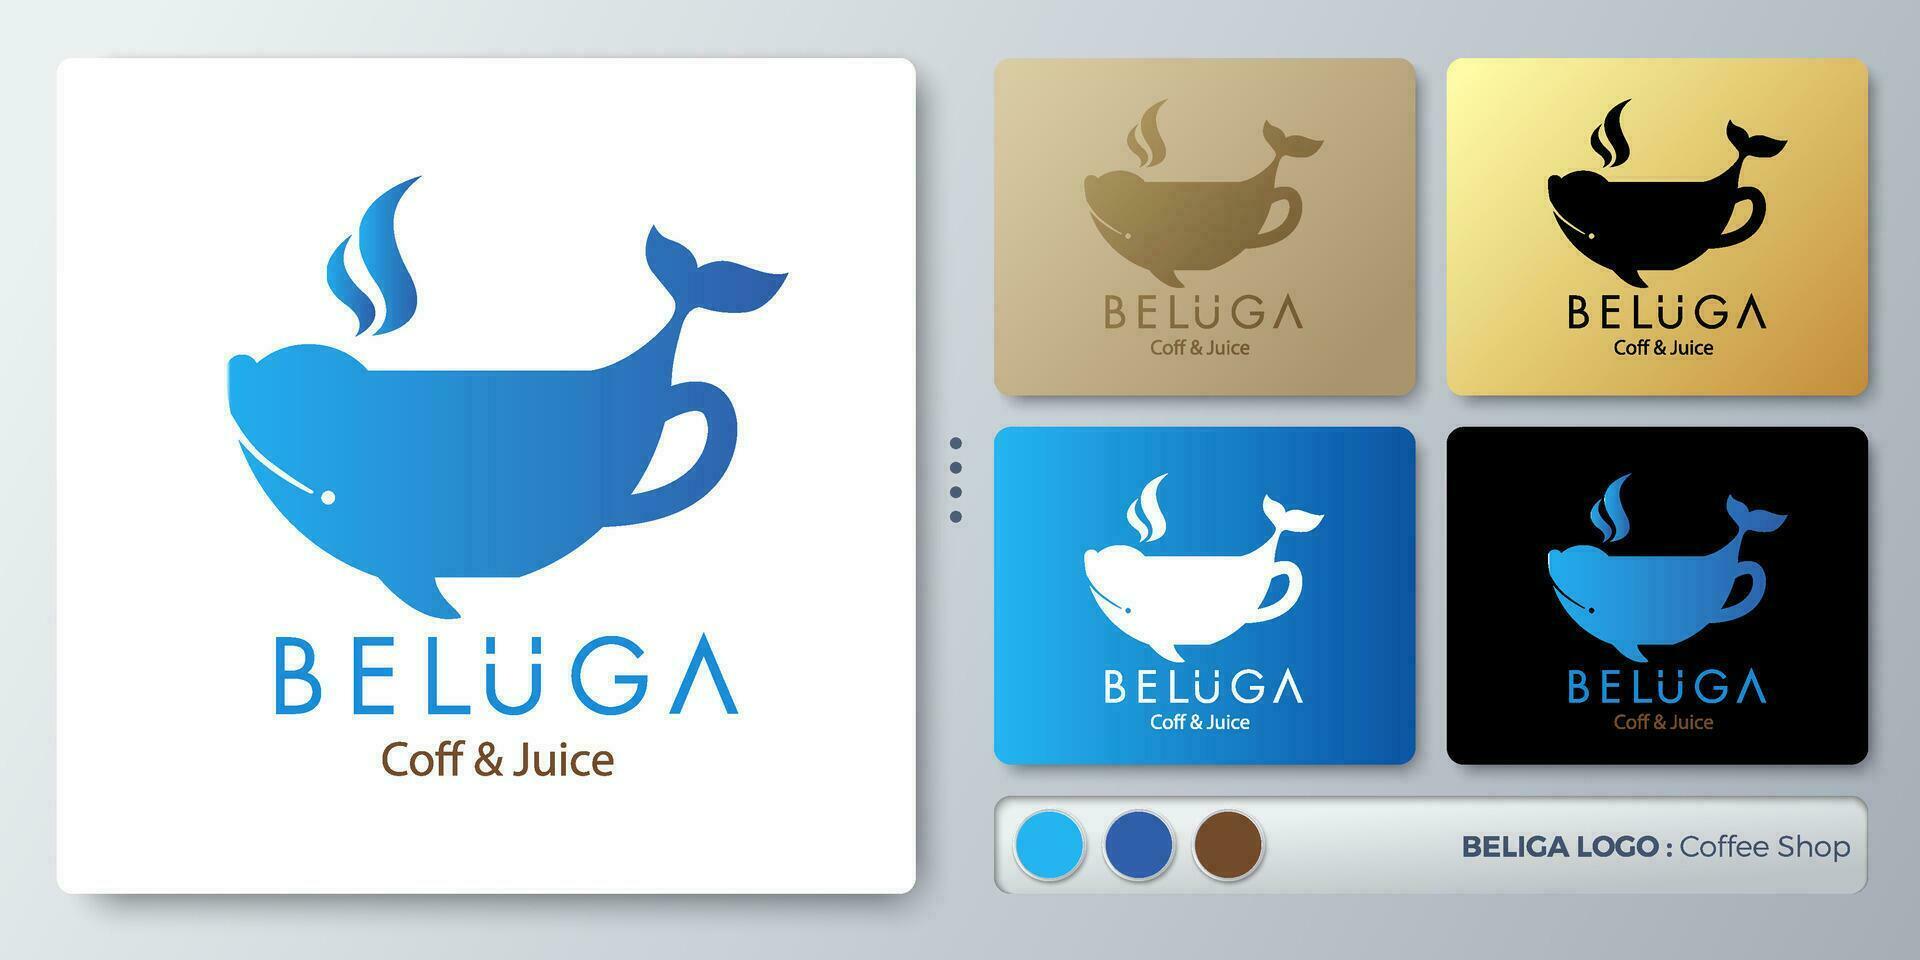 beluga balena vettore illustrazione logo design. vuoto nome per inserire il tuo marchio. progettato con esempi per tutti tipi di applicazioni. voi può Usato per azienda, identità, caffè negozio, ristorante.